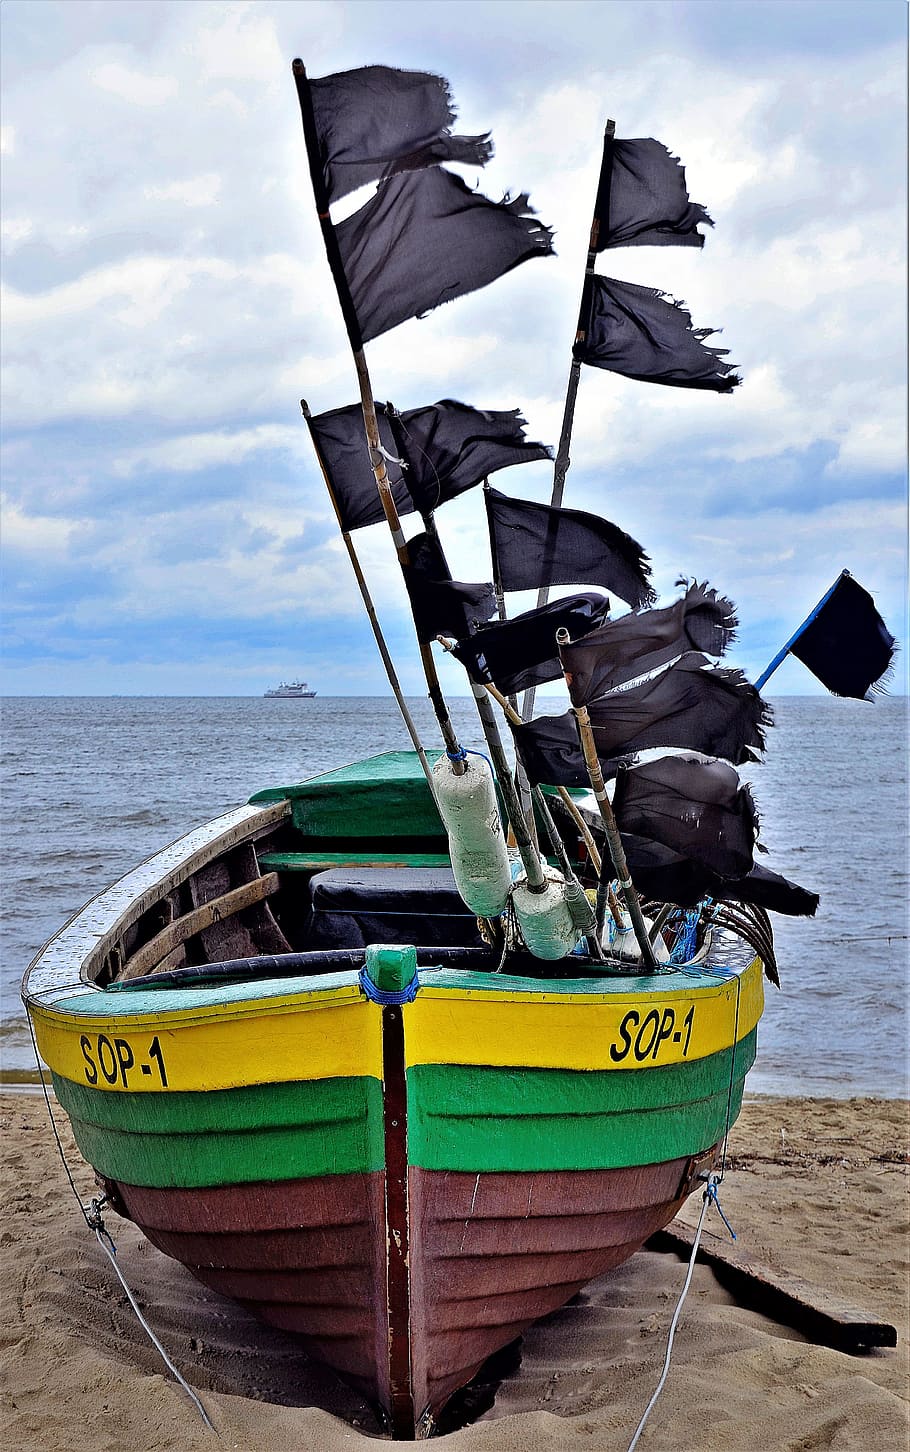 perahu, memancing, perahu nelayan, air, ikan, nelayan, hitam, bendera, jaring, mengapung